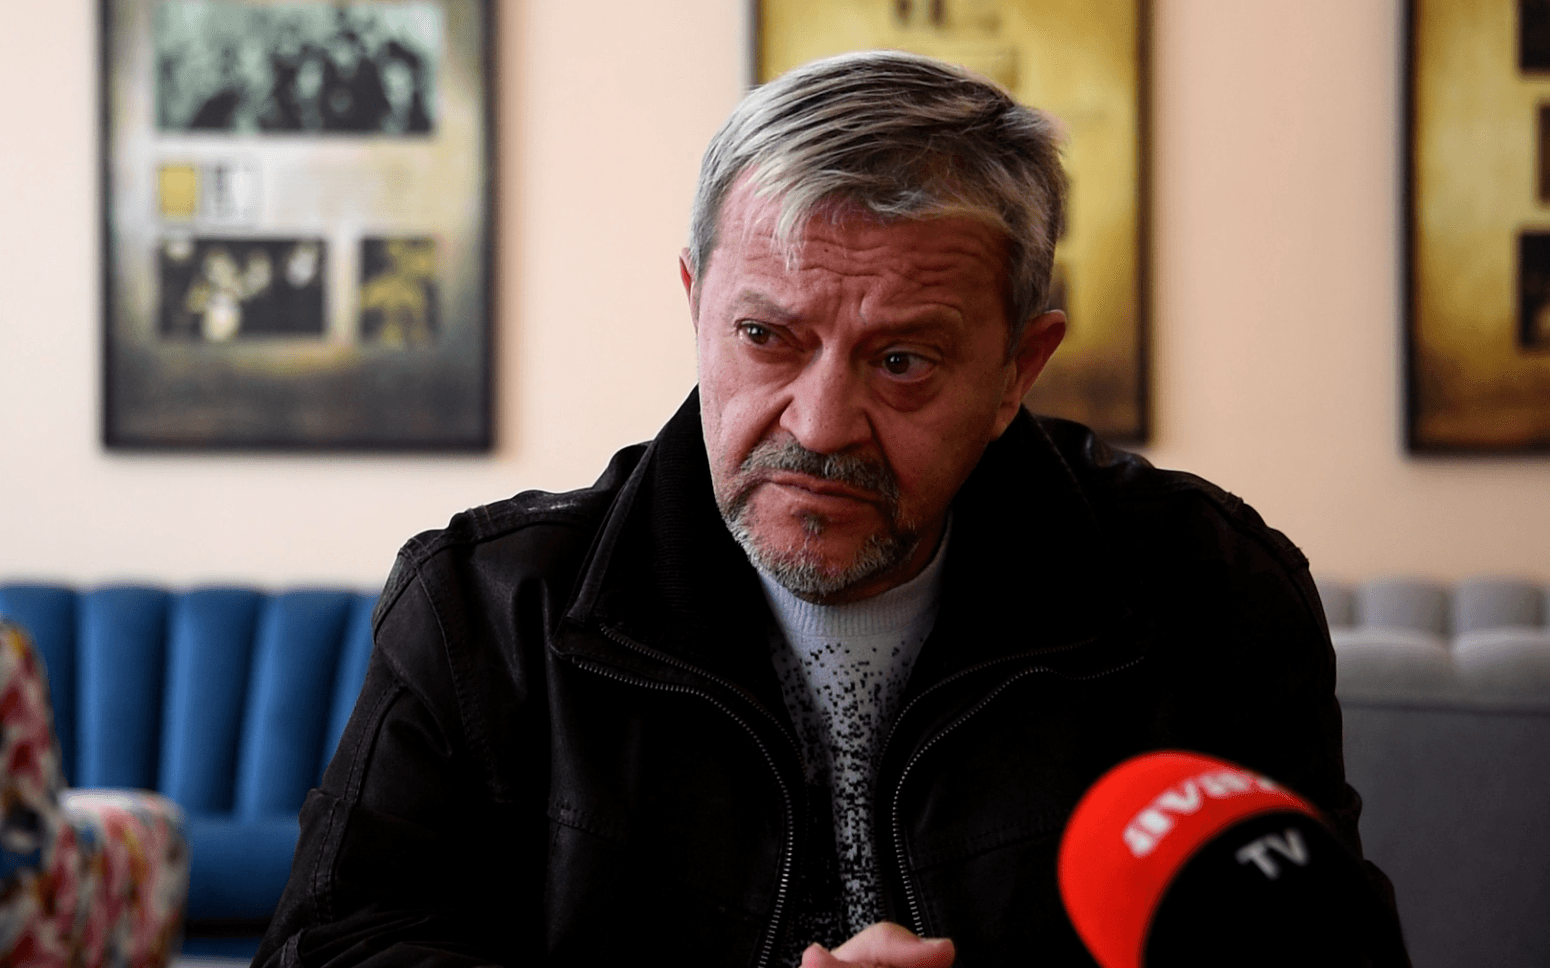 Emir Hadžihafizbegović za "Avaz TV": Zločinci se trebaju plašiti jer ćemo ih po ko zna koji put putem umjetnosti raskrinkati